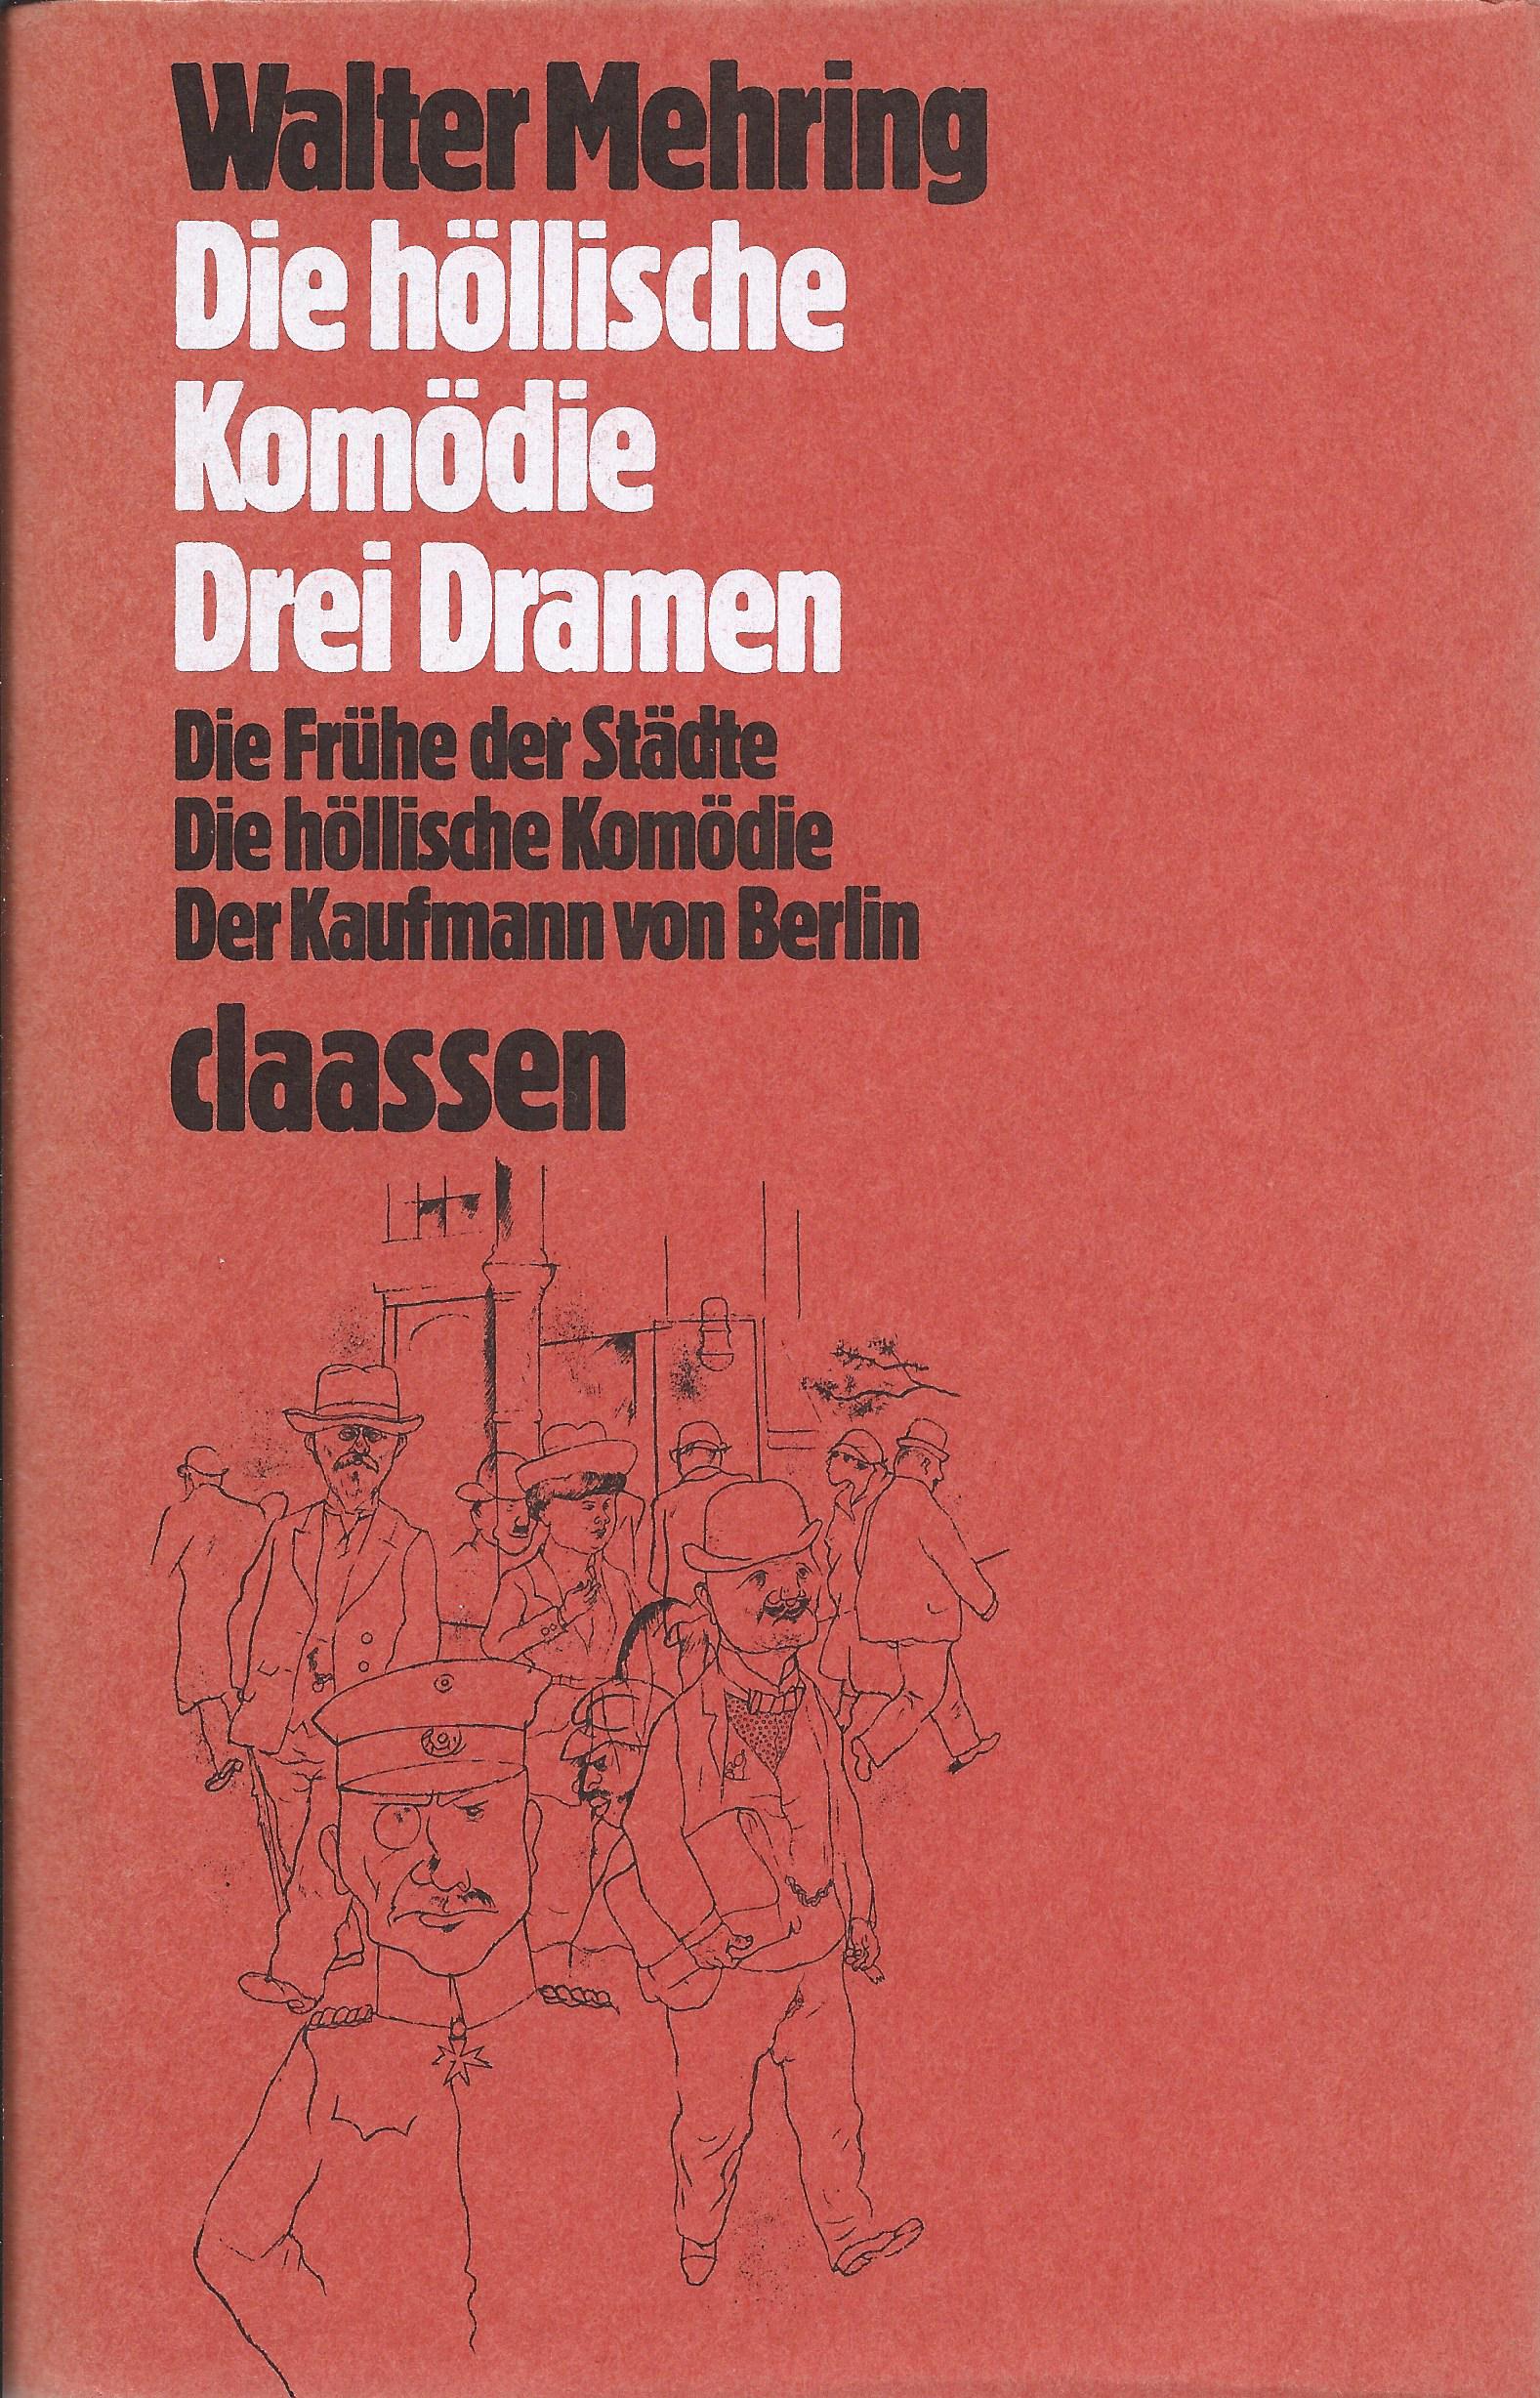 Die höllische Komödie - Drei Dramen (1979)